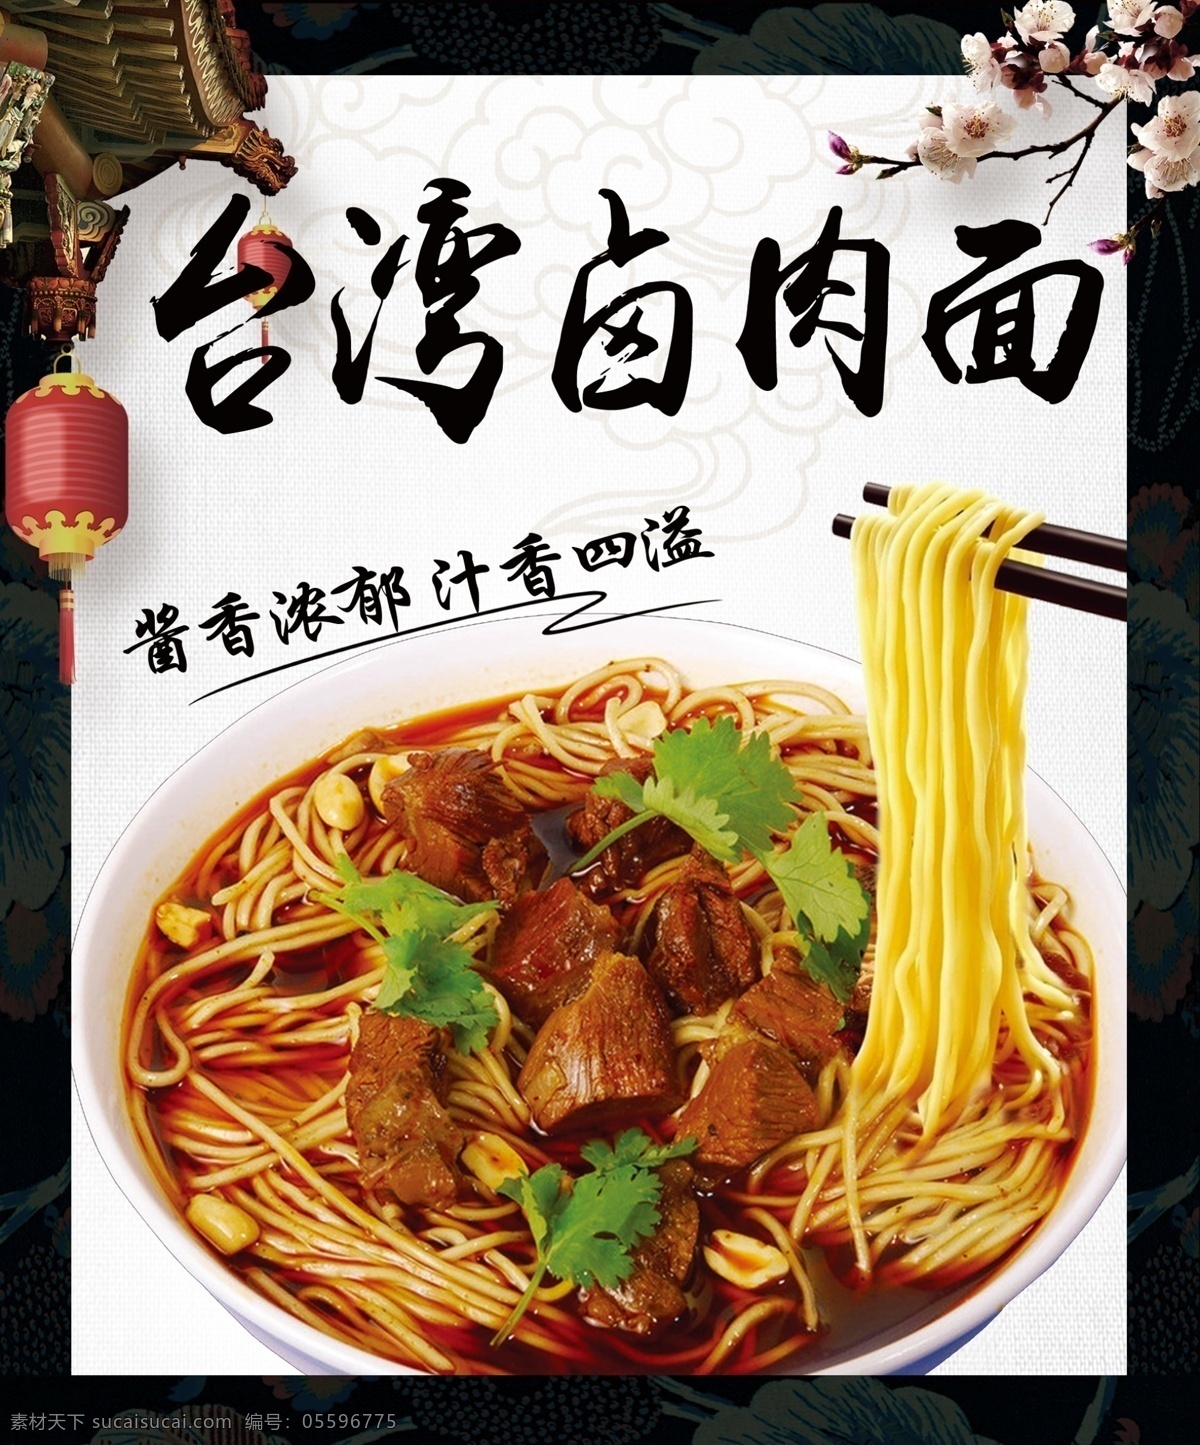 卤肉面图片 台湾卤肉面 卤肉面 汤面 菜品 菜单菜谱